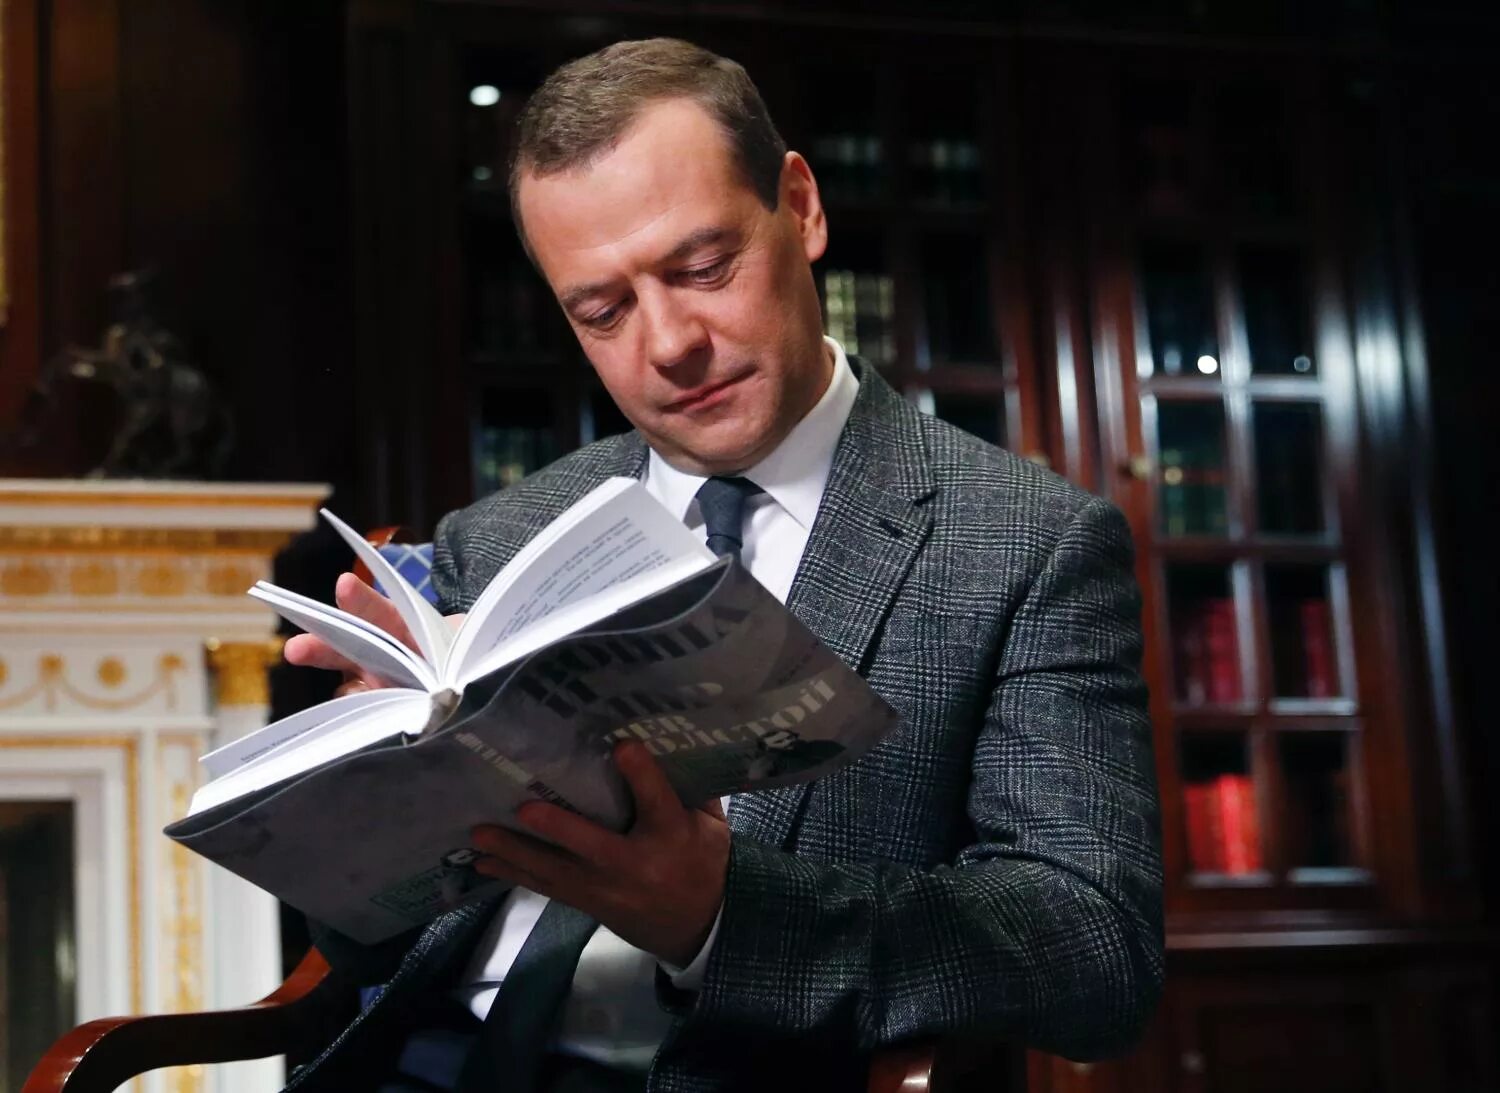 Медведев юрист. Известные политики. Медведев с книгой. Знаменитости с книгой.